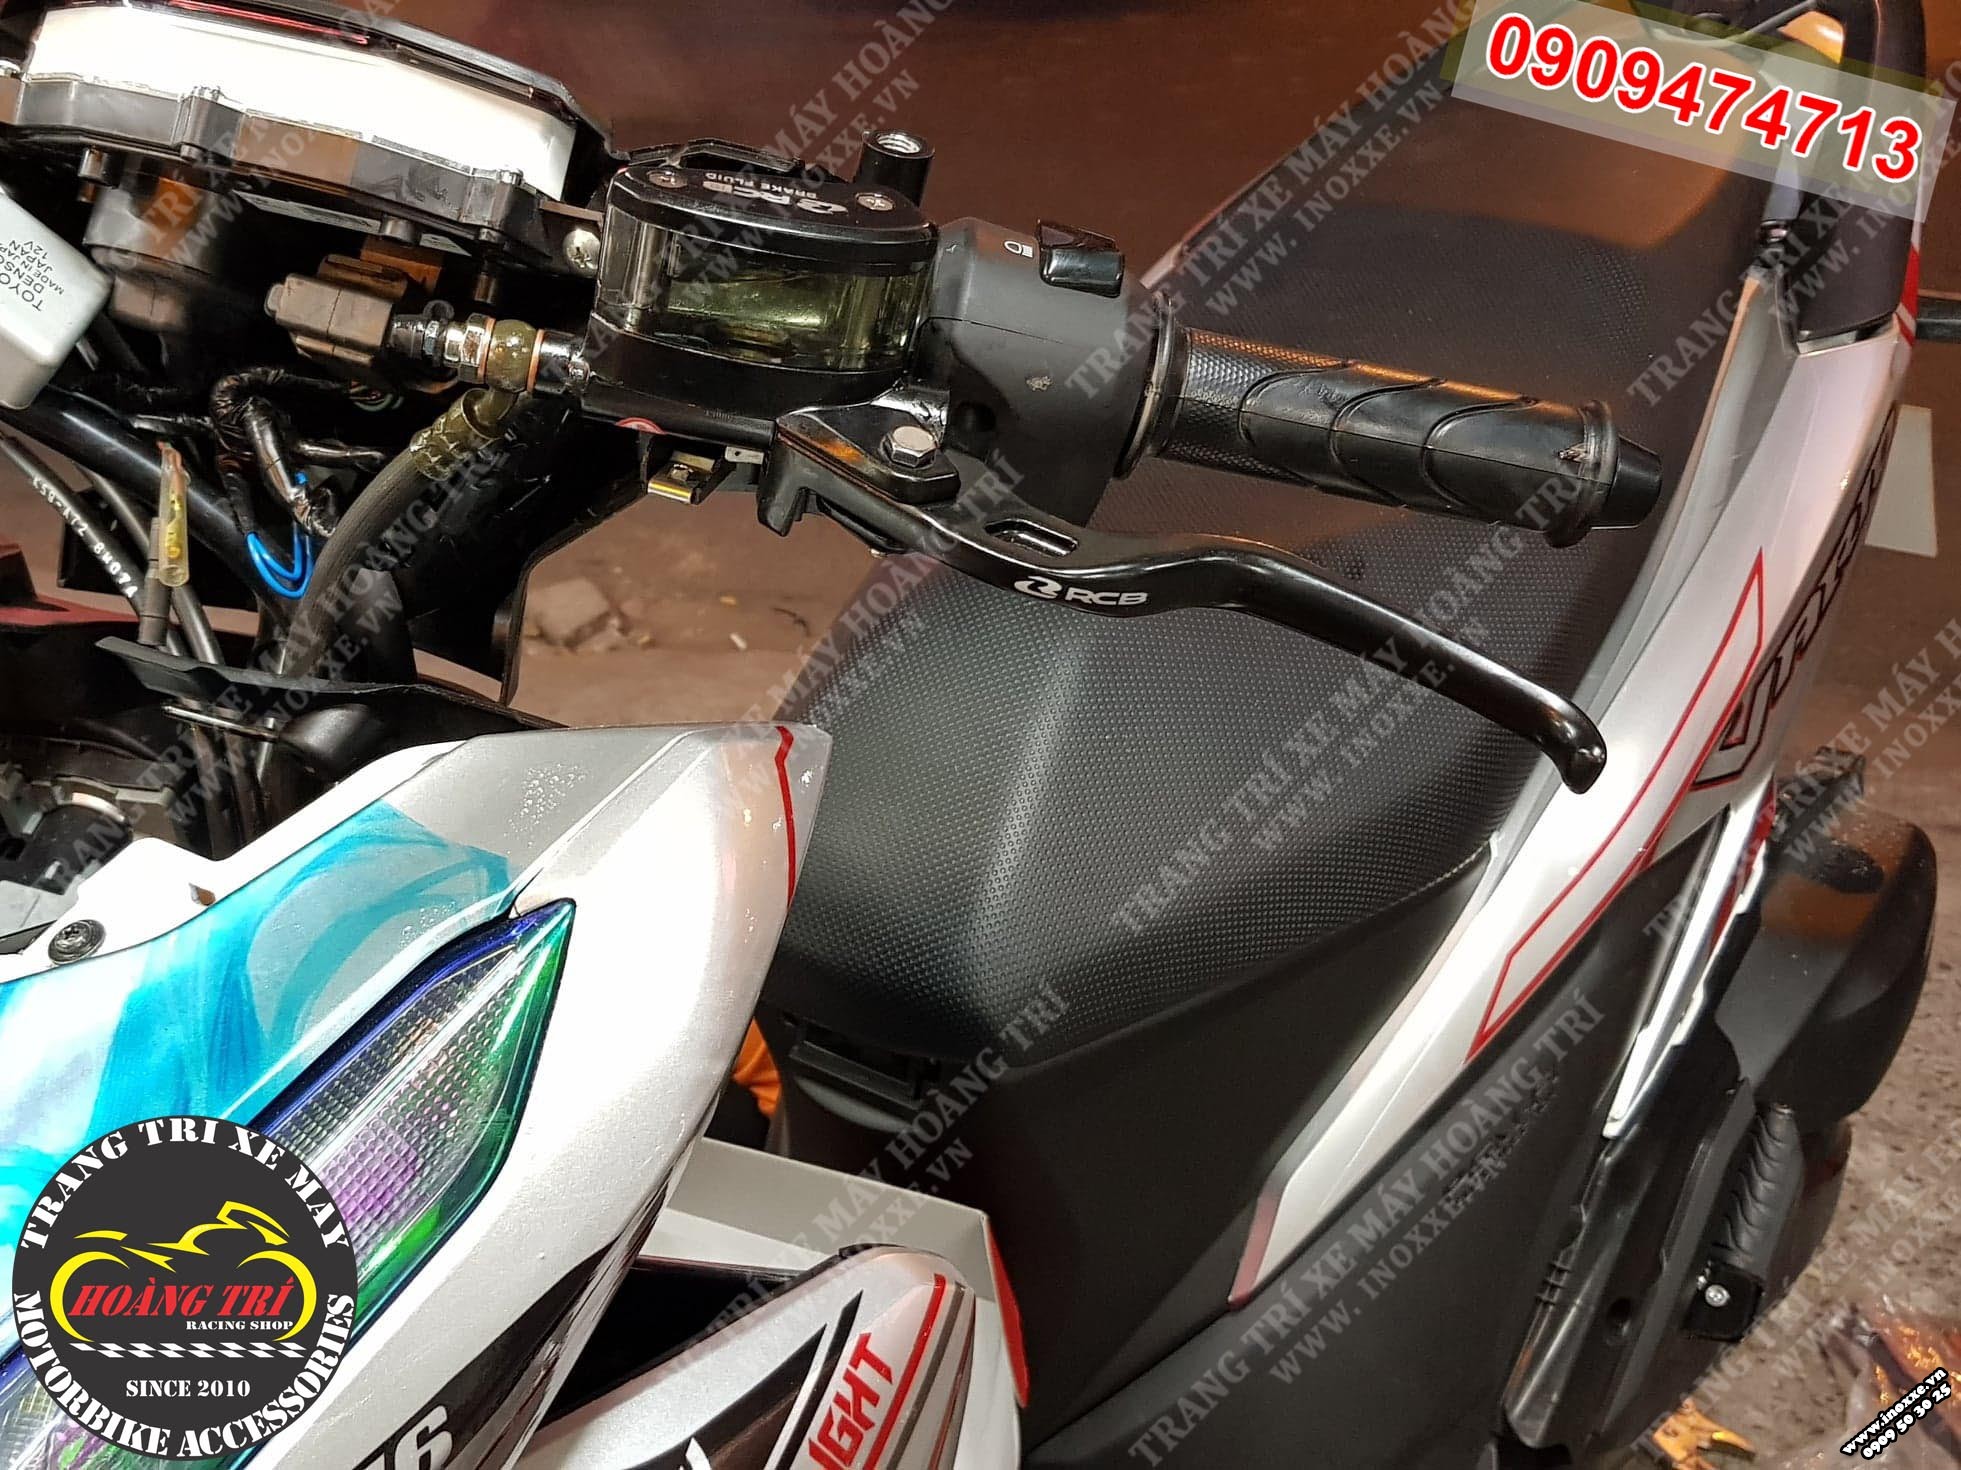 Tay thắng bình dầu Racing Boy lắp đặt Vario - Click Thái 2018